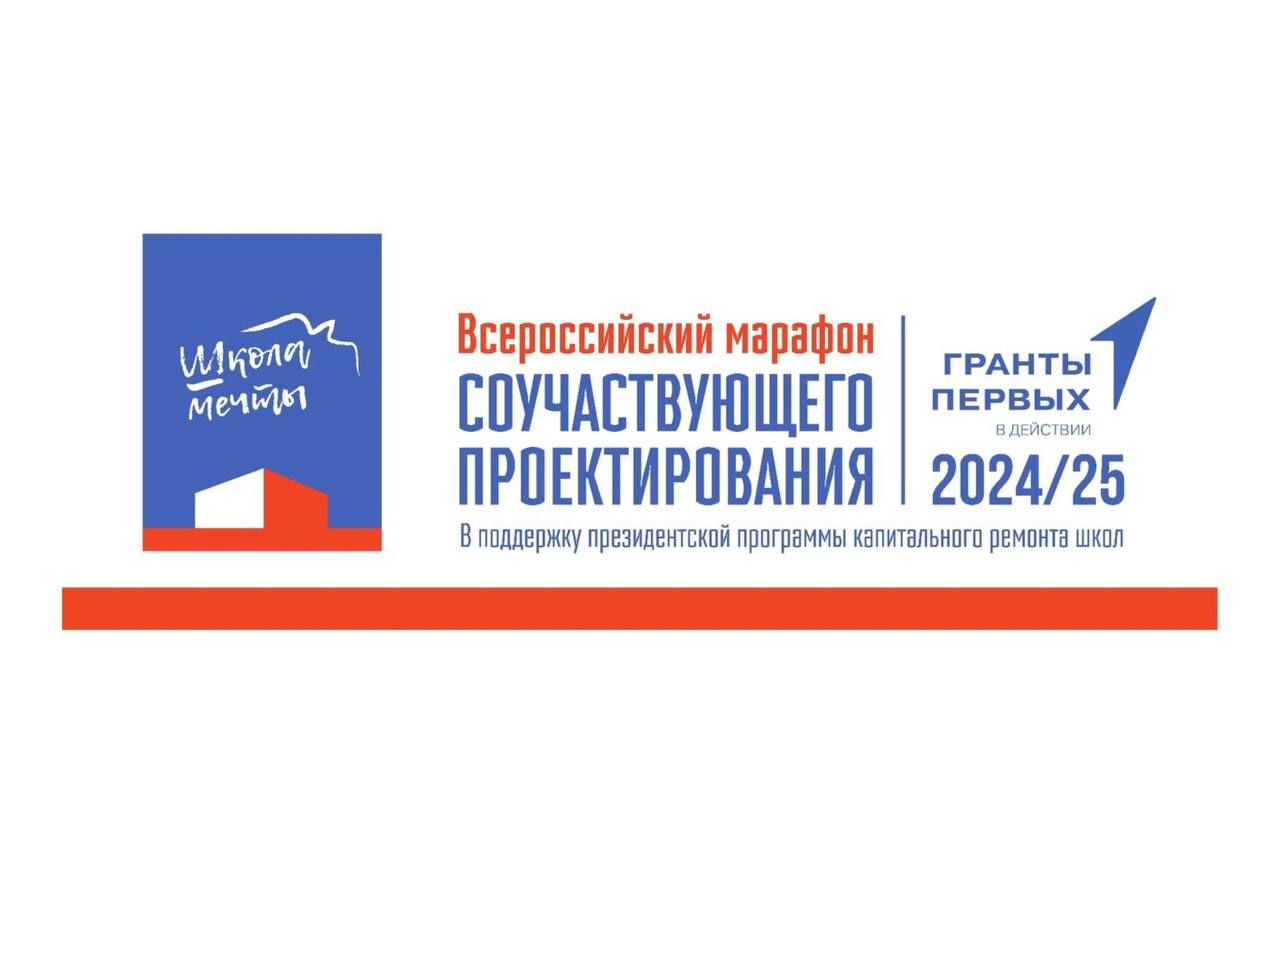 Объявлен сбор заявок на участие во Всероссийском марафоне «Школа мечты»